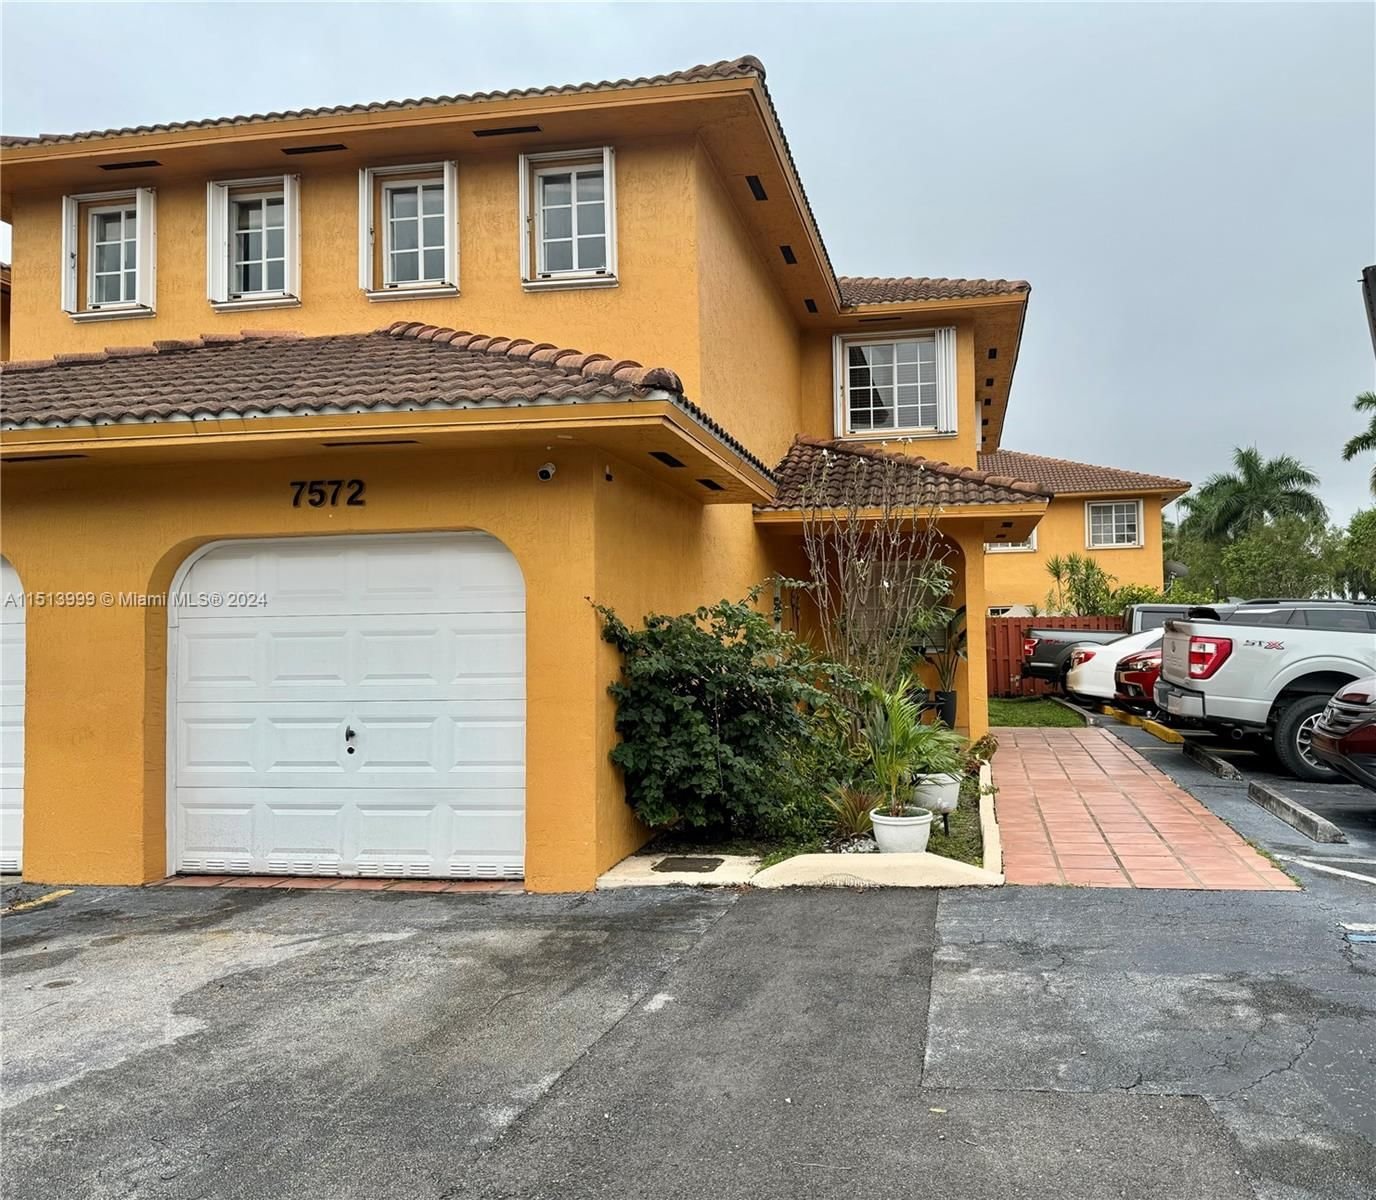 Real estate property located at 7572 176th St #7572, Miami-Dade County, LILANDIA ESTATES CONDO, Hialeah, FL